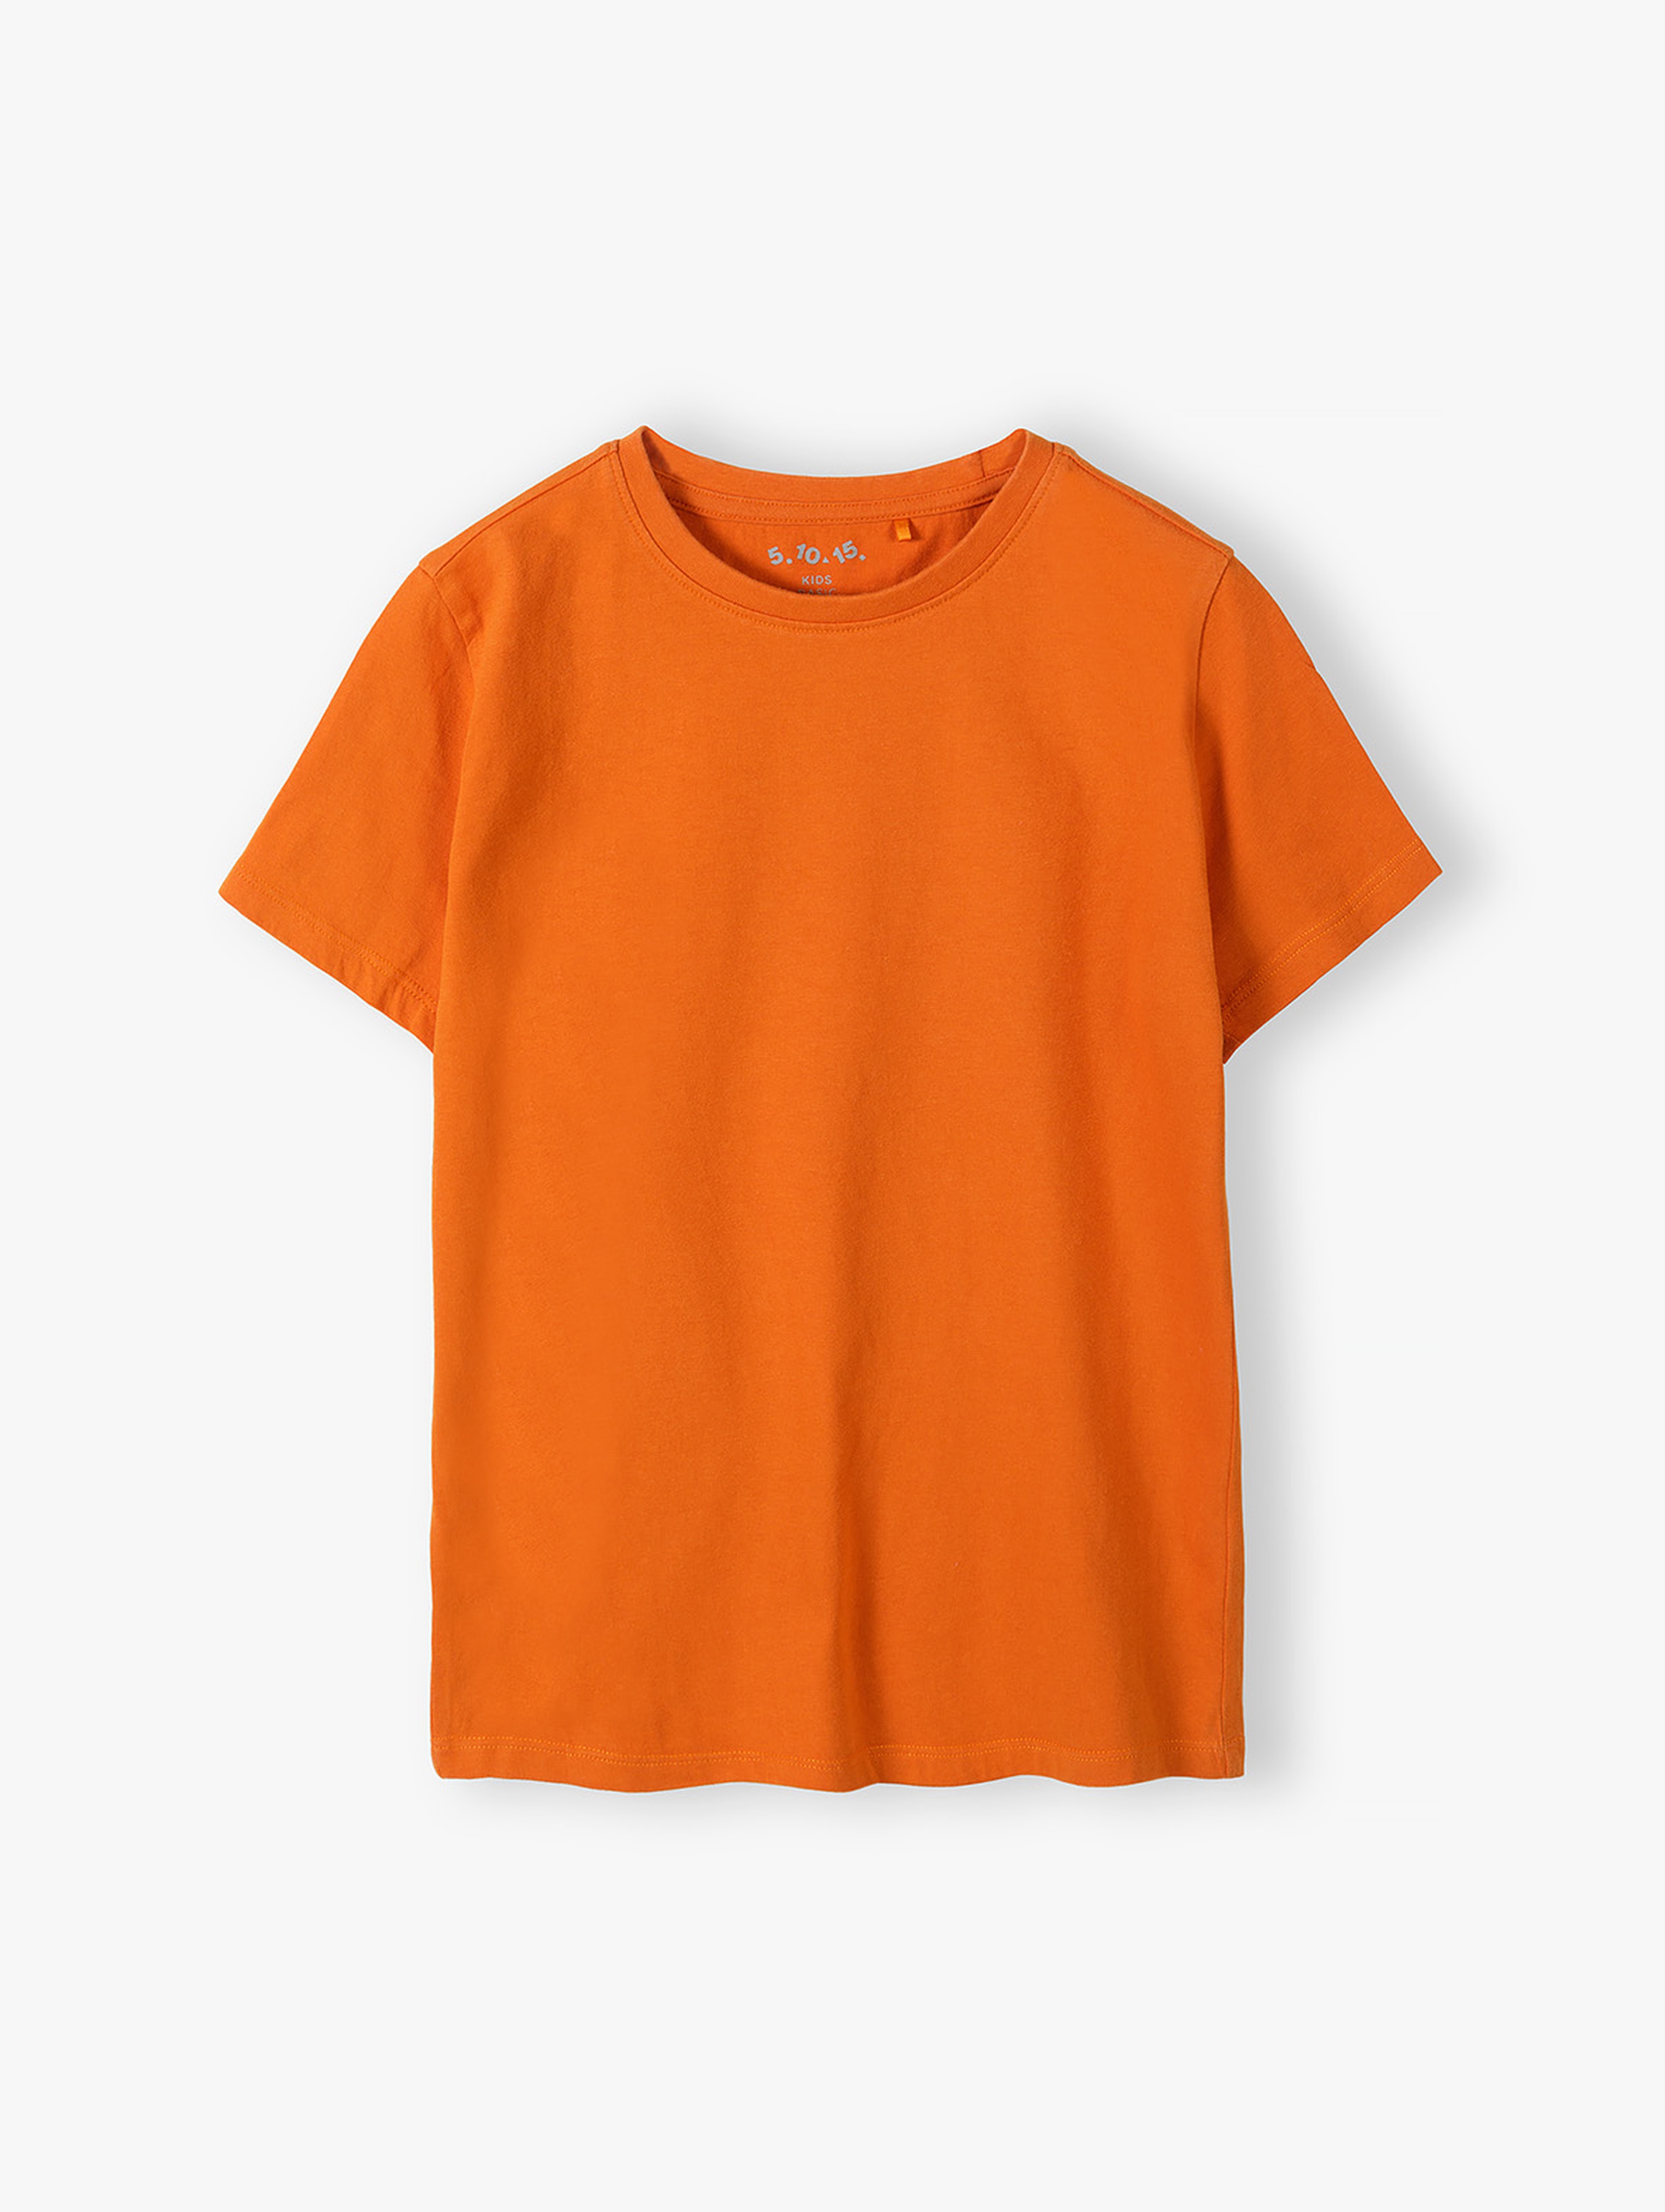 Pomarańczowy gładki t-shirt dla dziecka